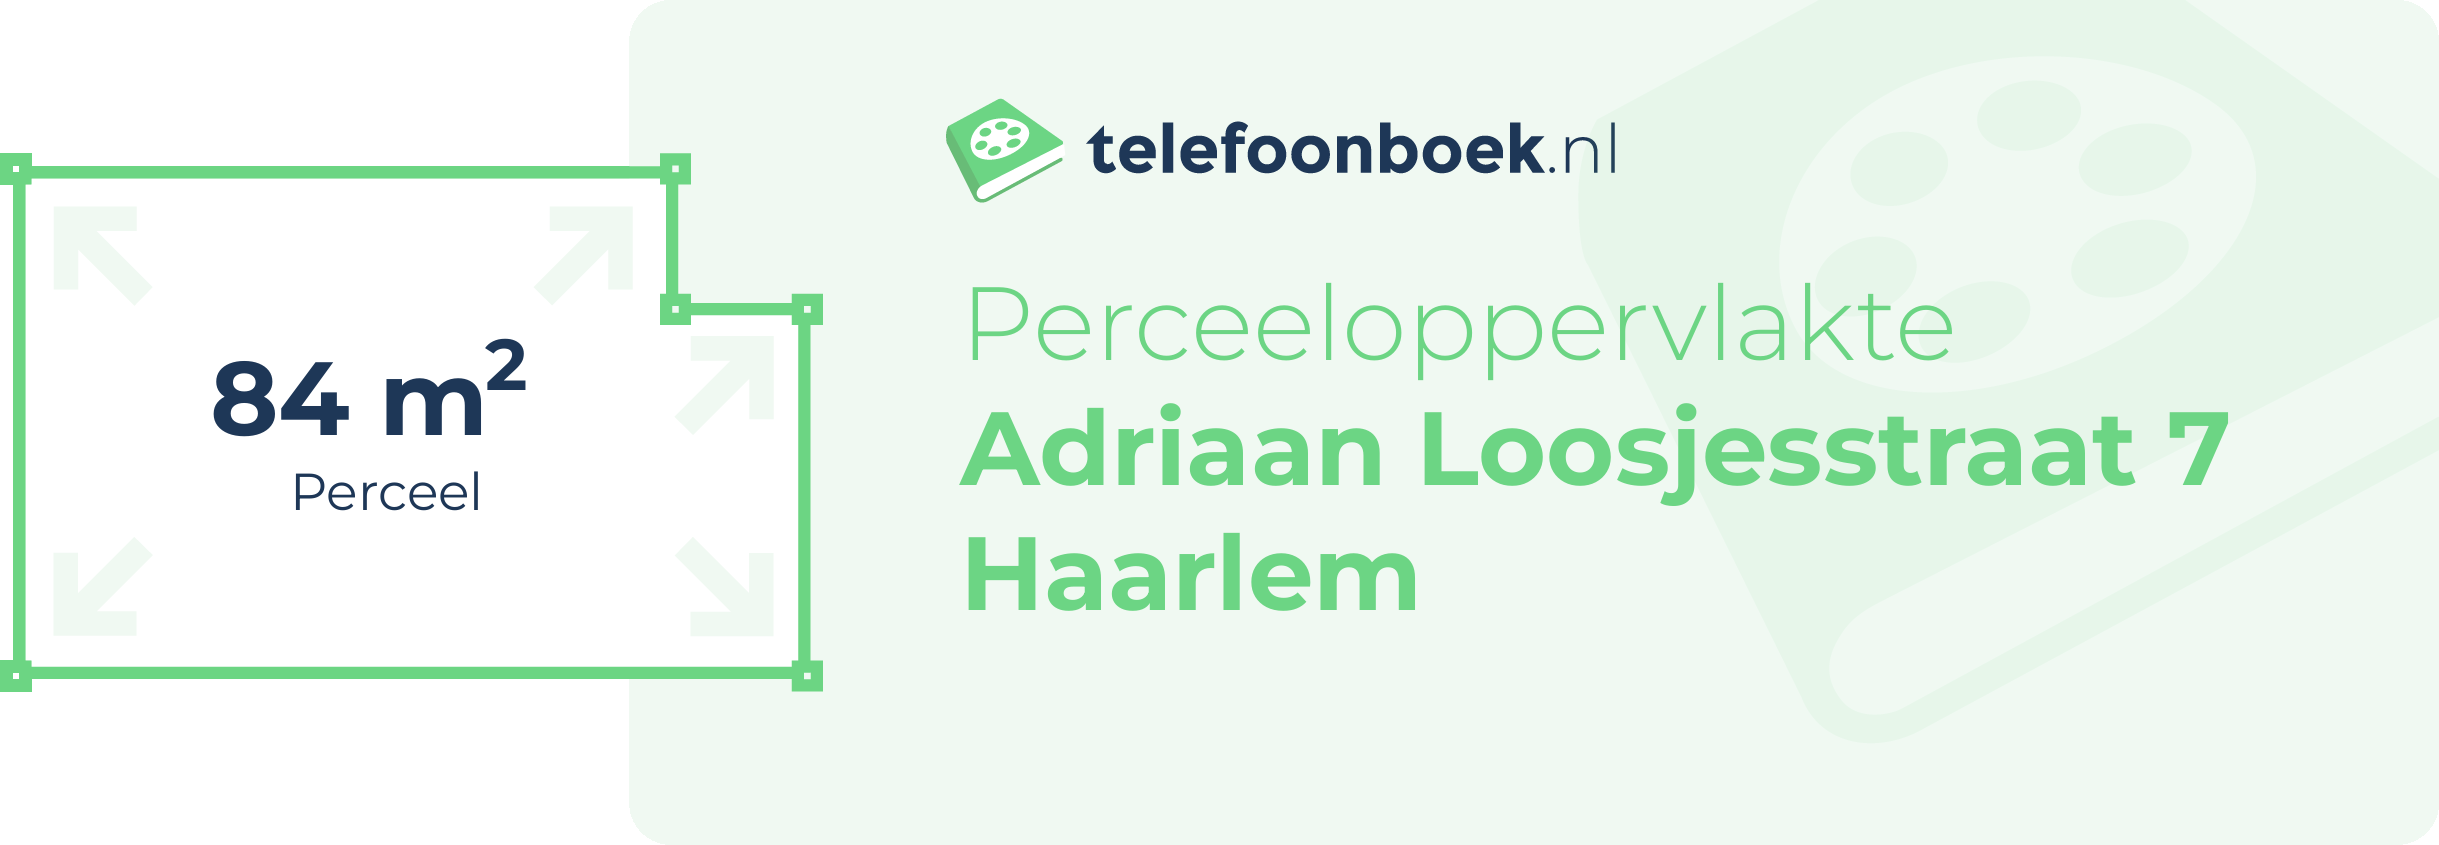 Perceeloppervlakte Adriaan Loosjesstraat 7 Haarlem